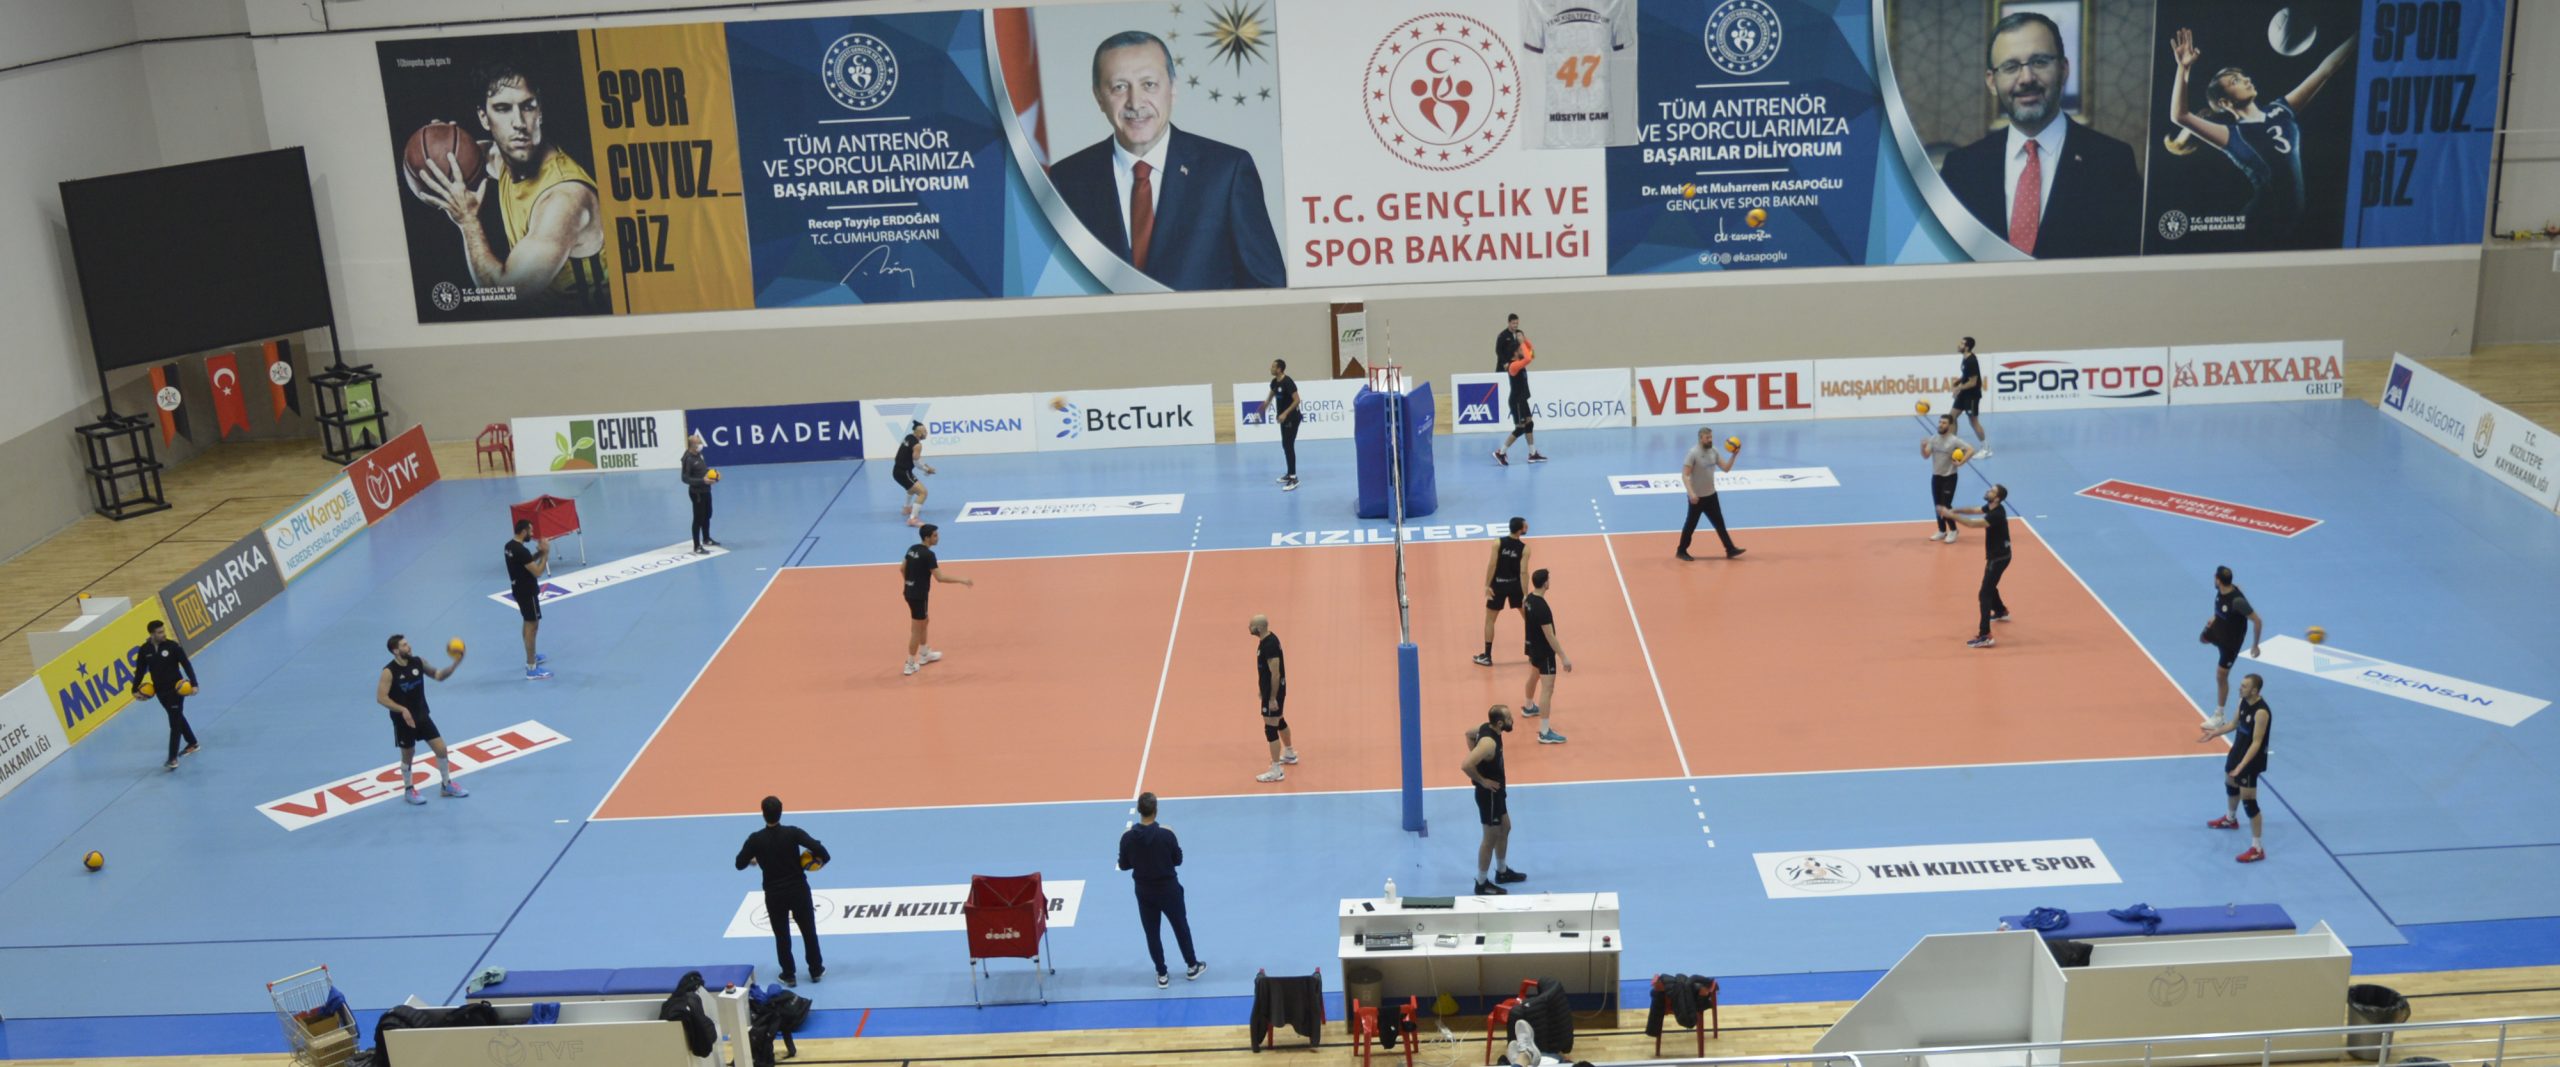 Mezopotamya Efeleri Yeni Kızıltepe Spor Bingöl maçına hazır